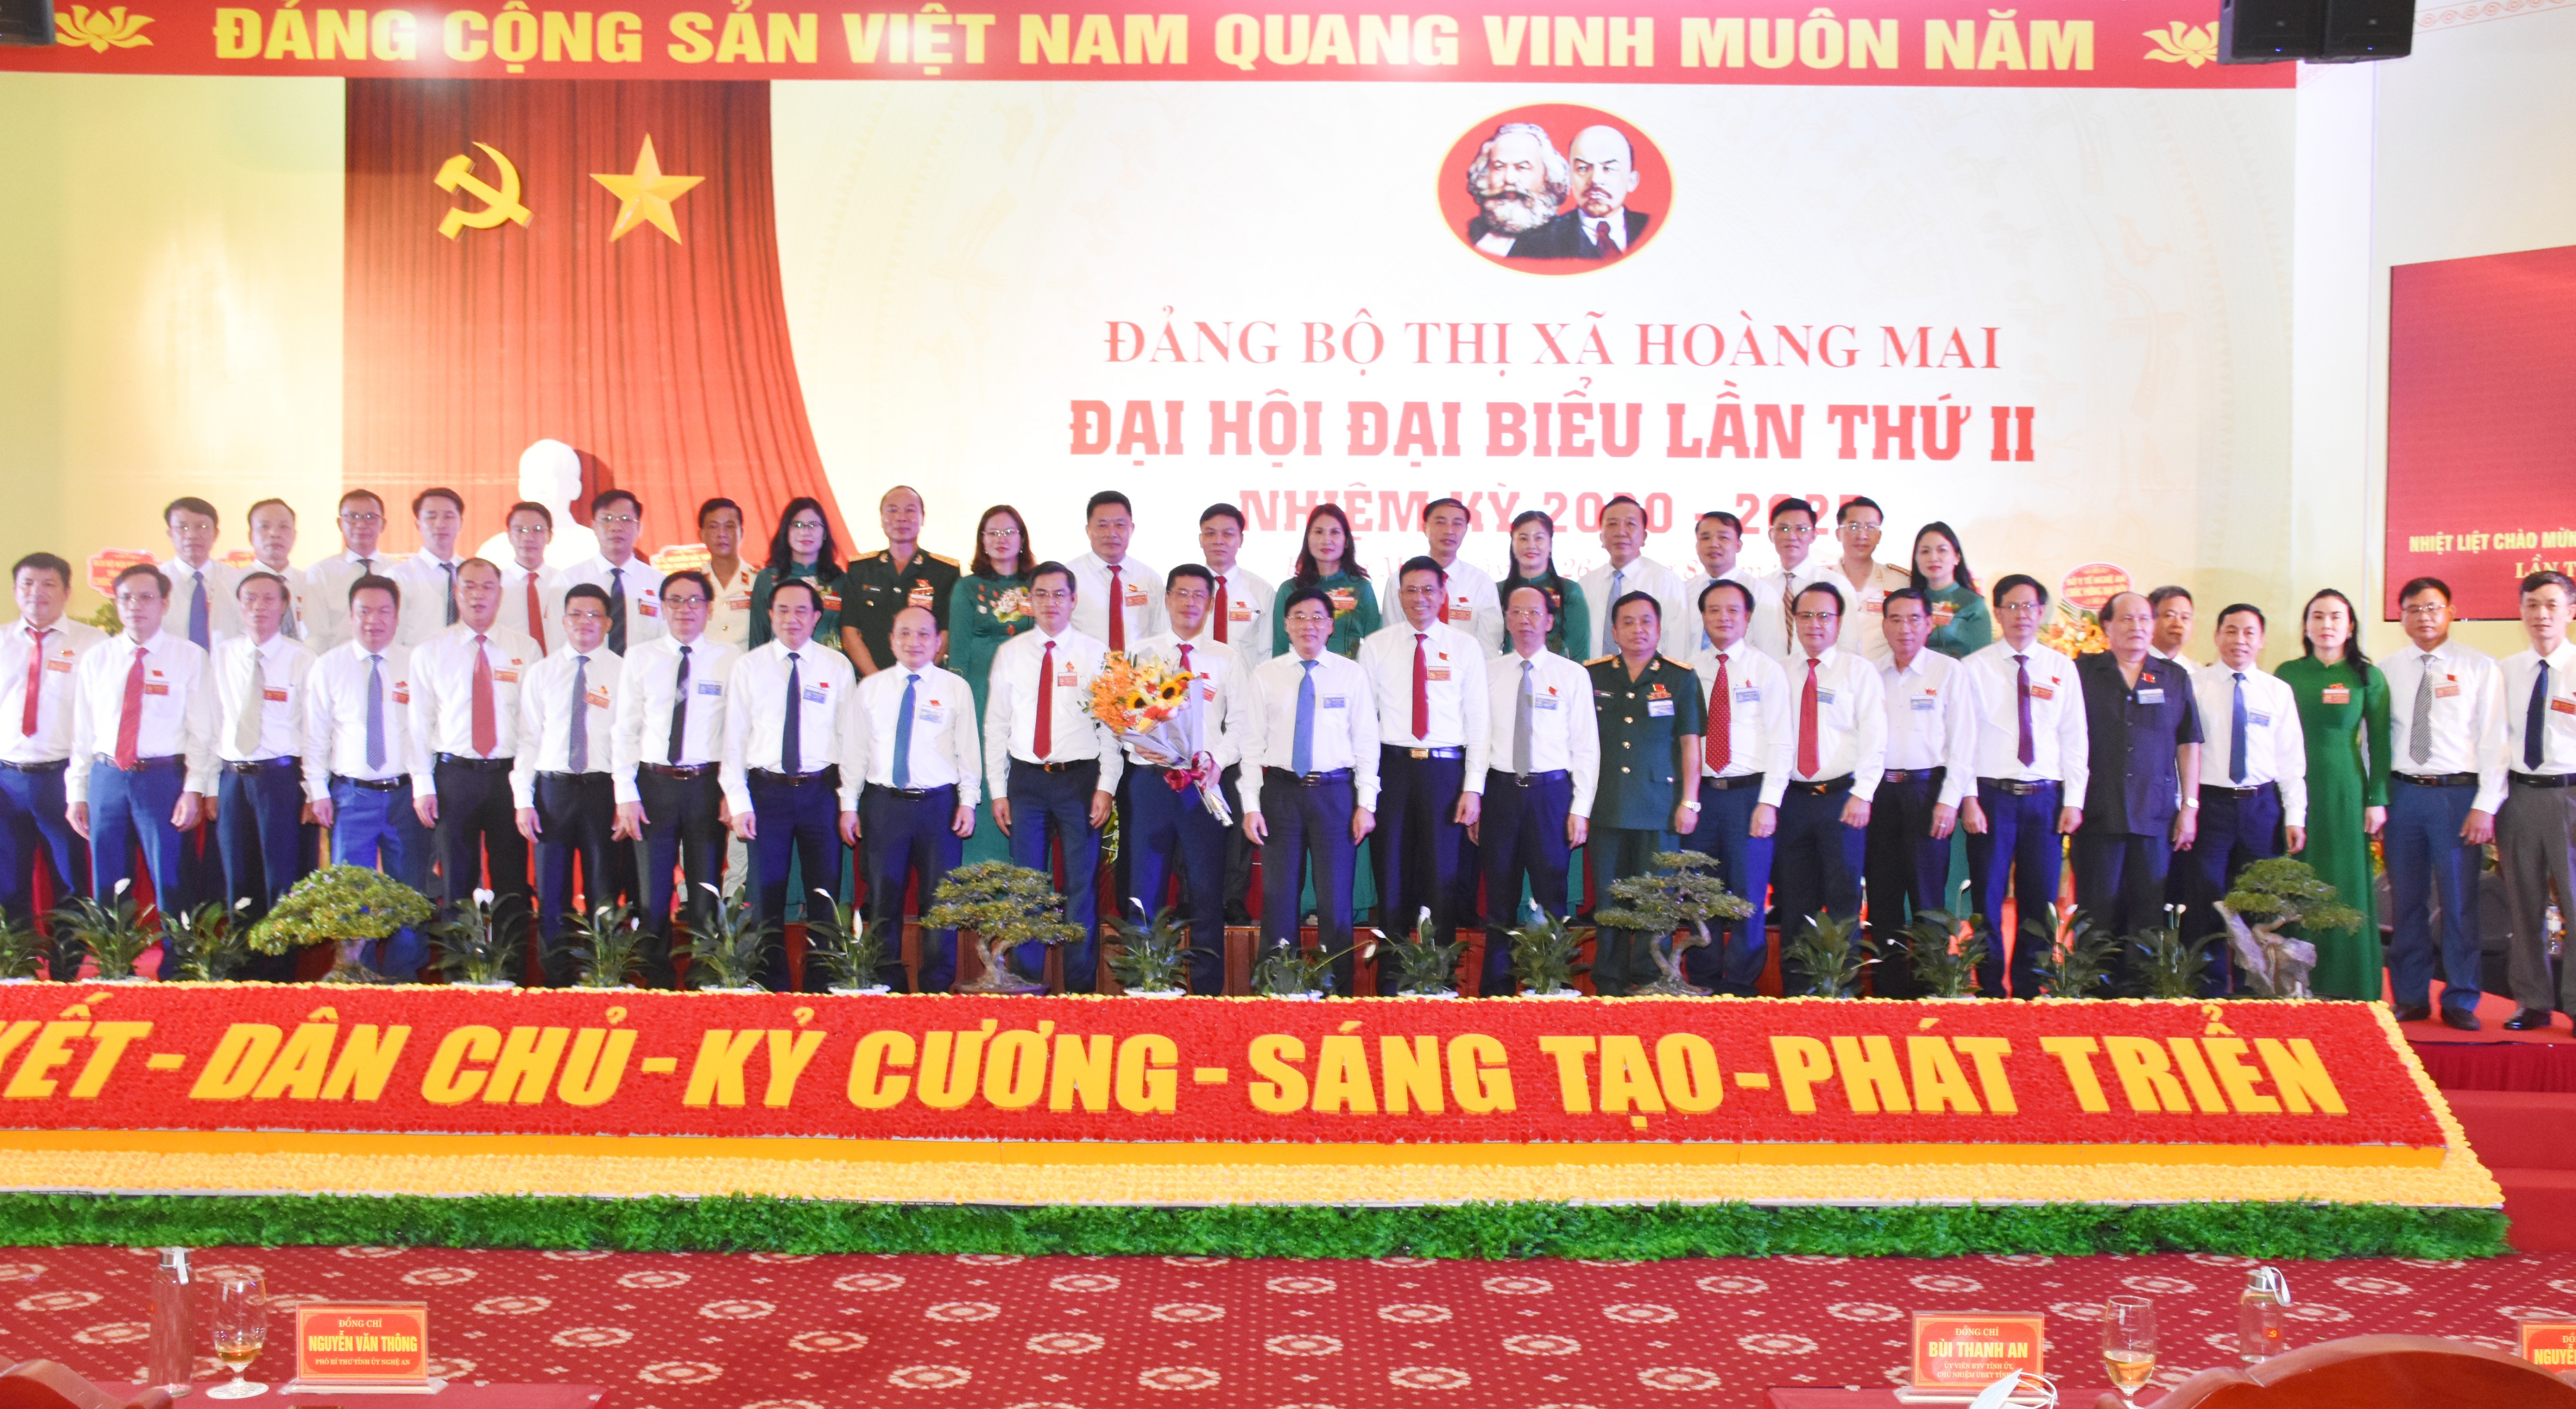 Lãnh đạo tỉnh tặng hoa chúc mừng Ban Chấp hành Đảng bộ thị xã Hoàng Mai lần thứ II, nhiệm kỳ 2020-2025. Ảnh: Thanh Lê